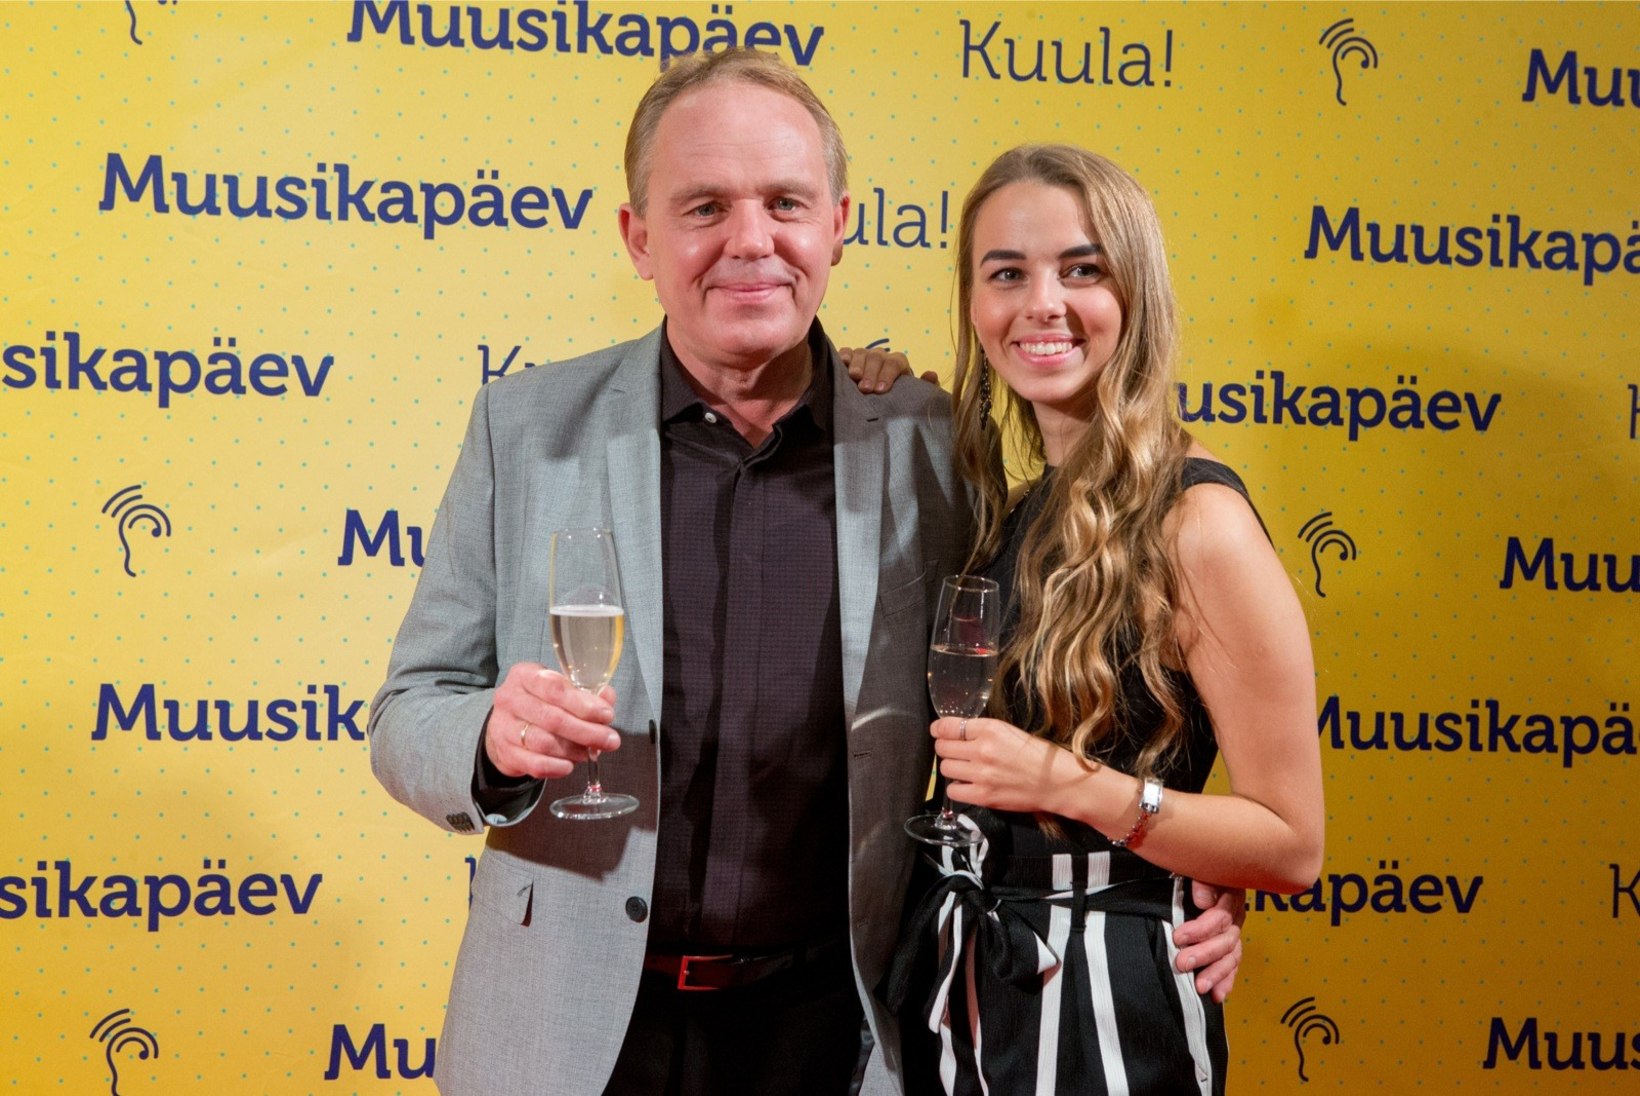 VIDEO | Kalju Terasmaa lapselapsest Marianne Leiburist on tõusmas tõeline muusikatäht!